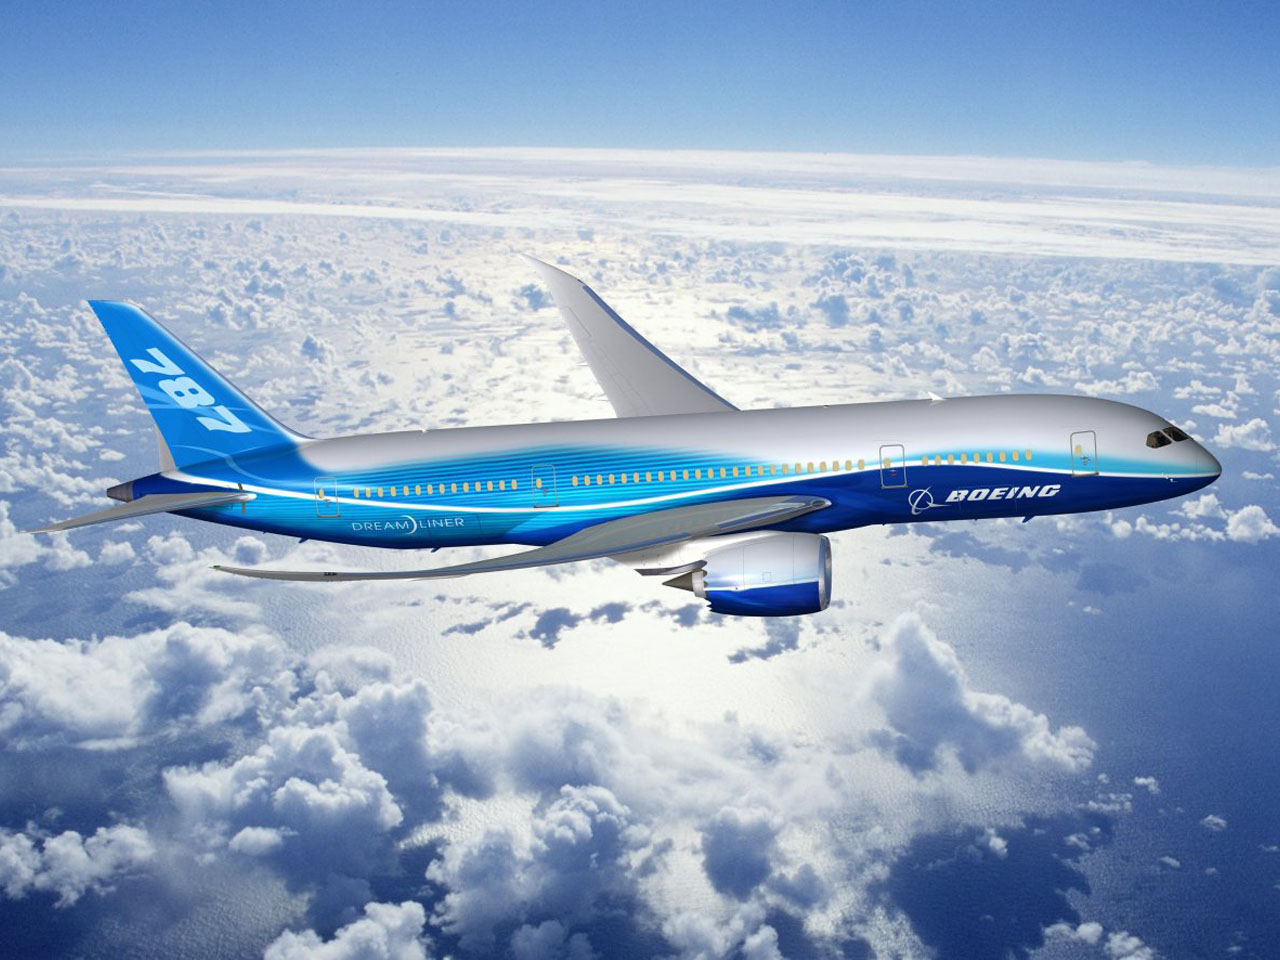 Le modèle 787-900 Dreamliner de Boeing